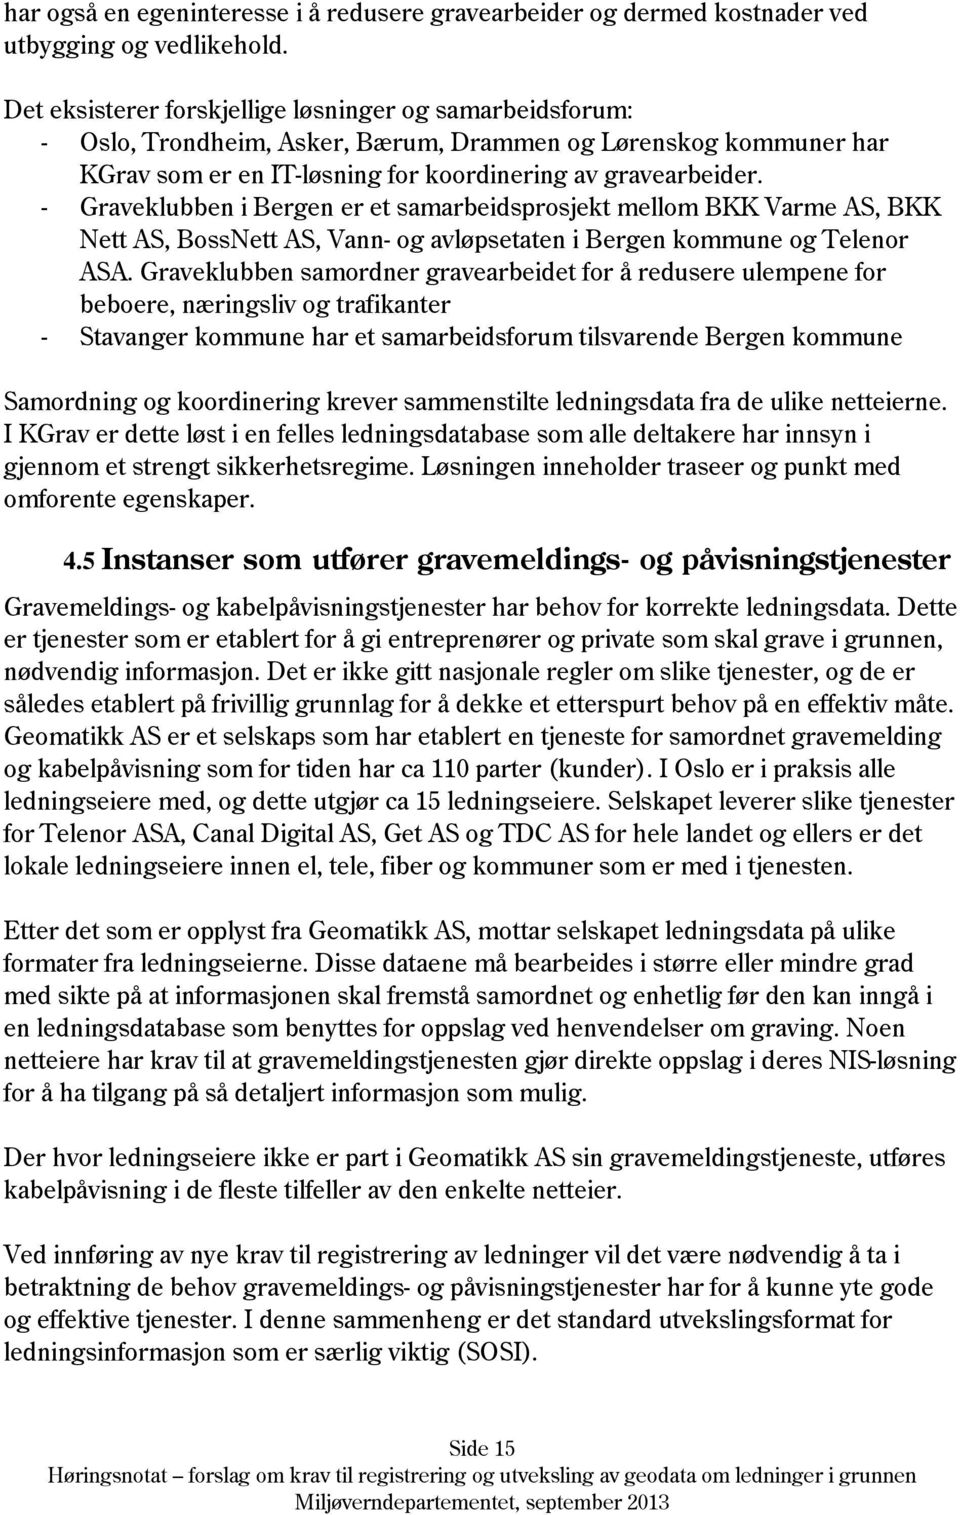 - Graveklubben i Bergen er et samarbeidsprosjekt mellom BKK Varme AS, BKK Nett AS, BossNett AS, Vann- og avløpsetaten i Bergen kommune og Telenor ASA.